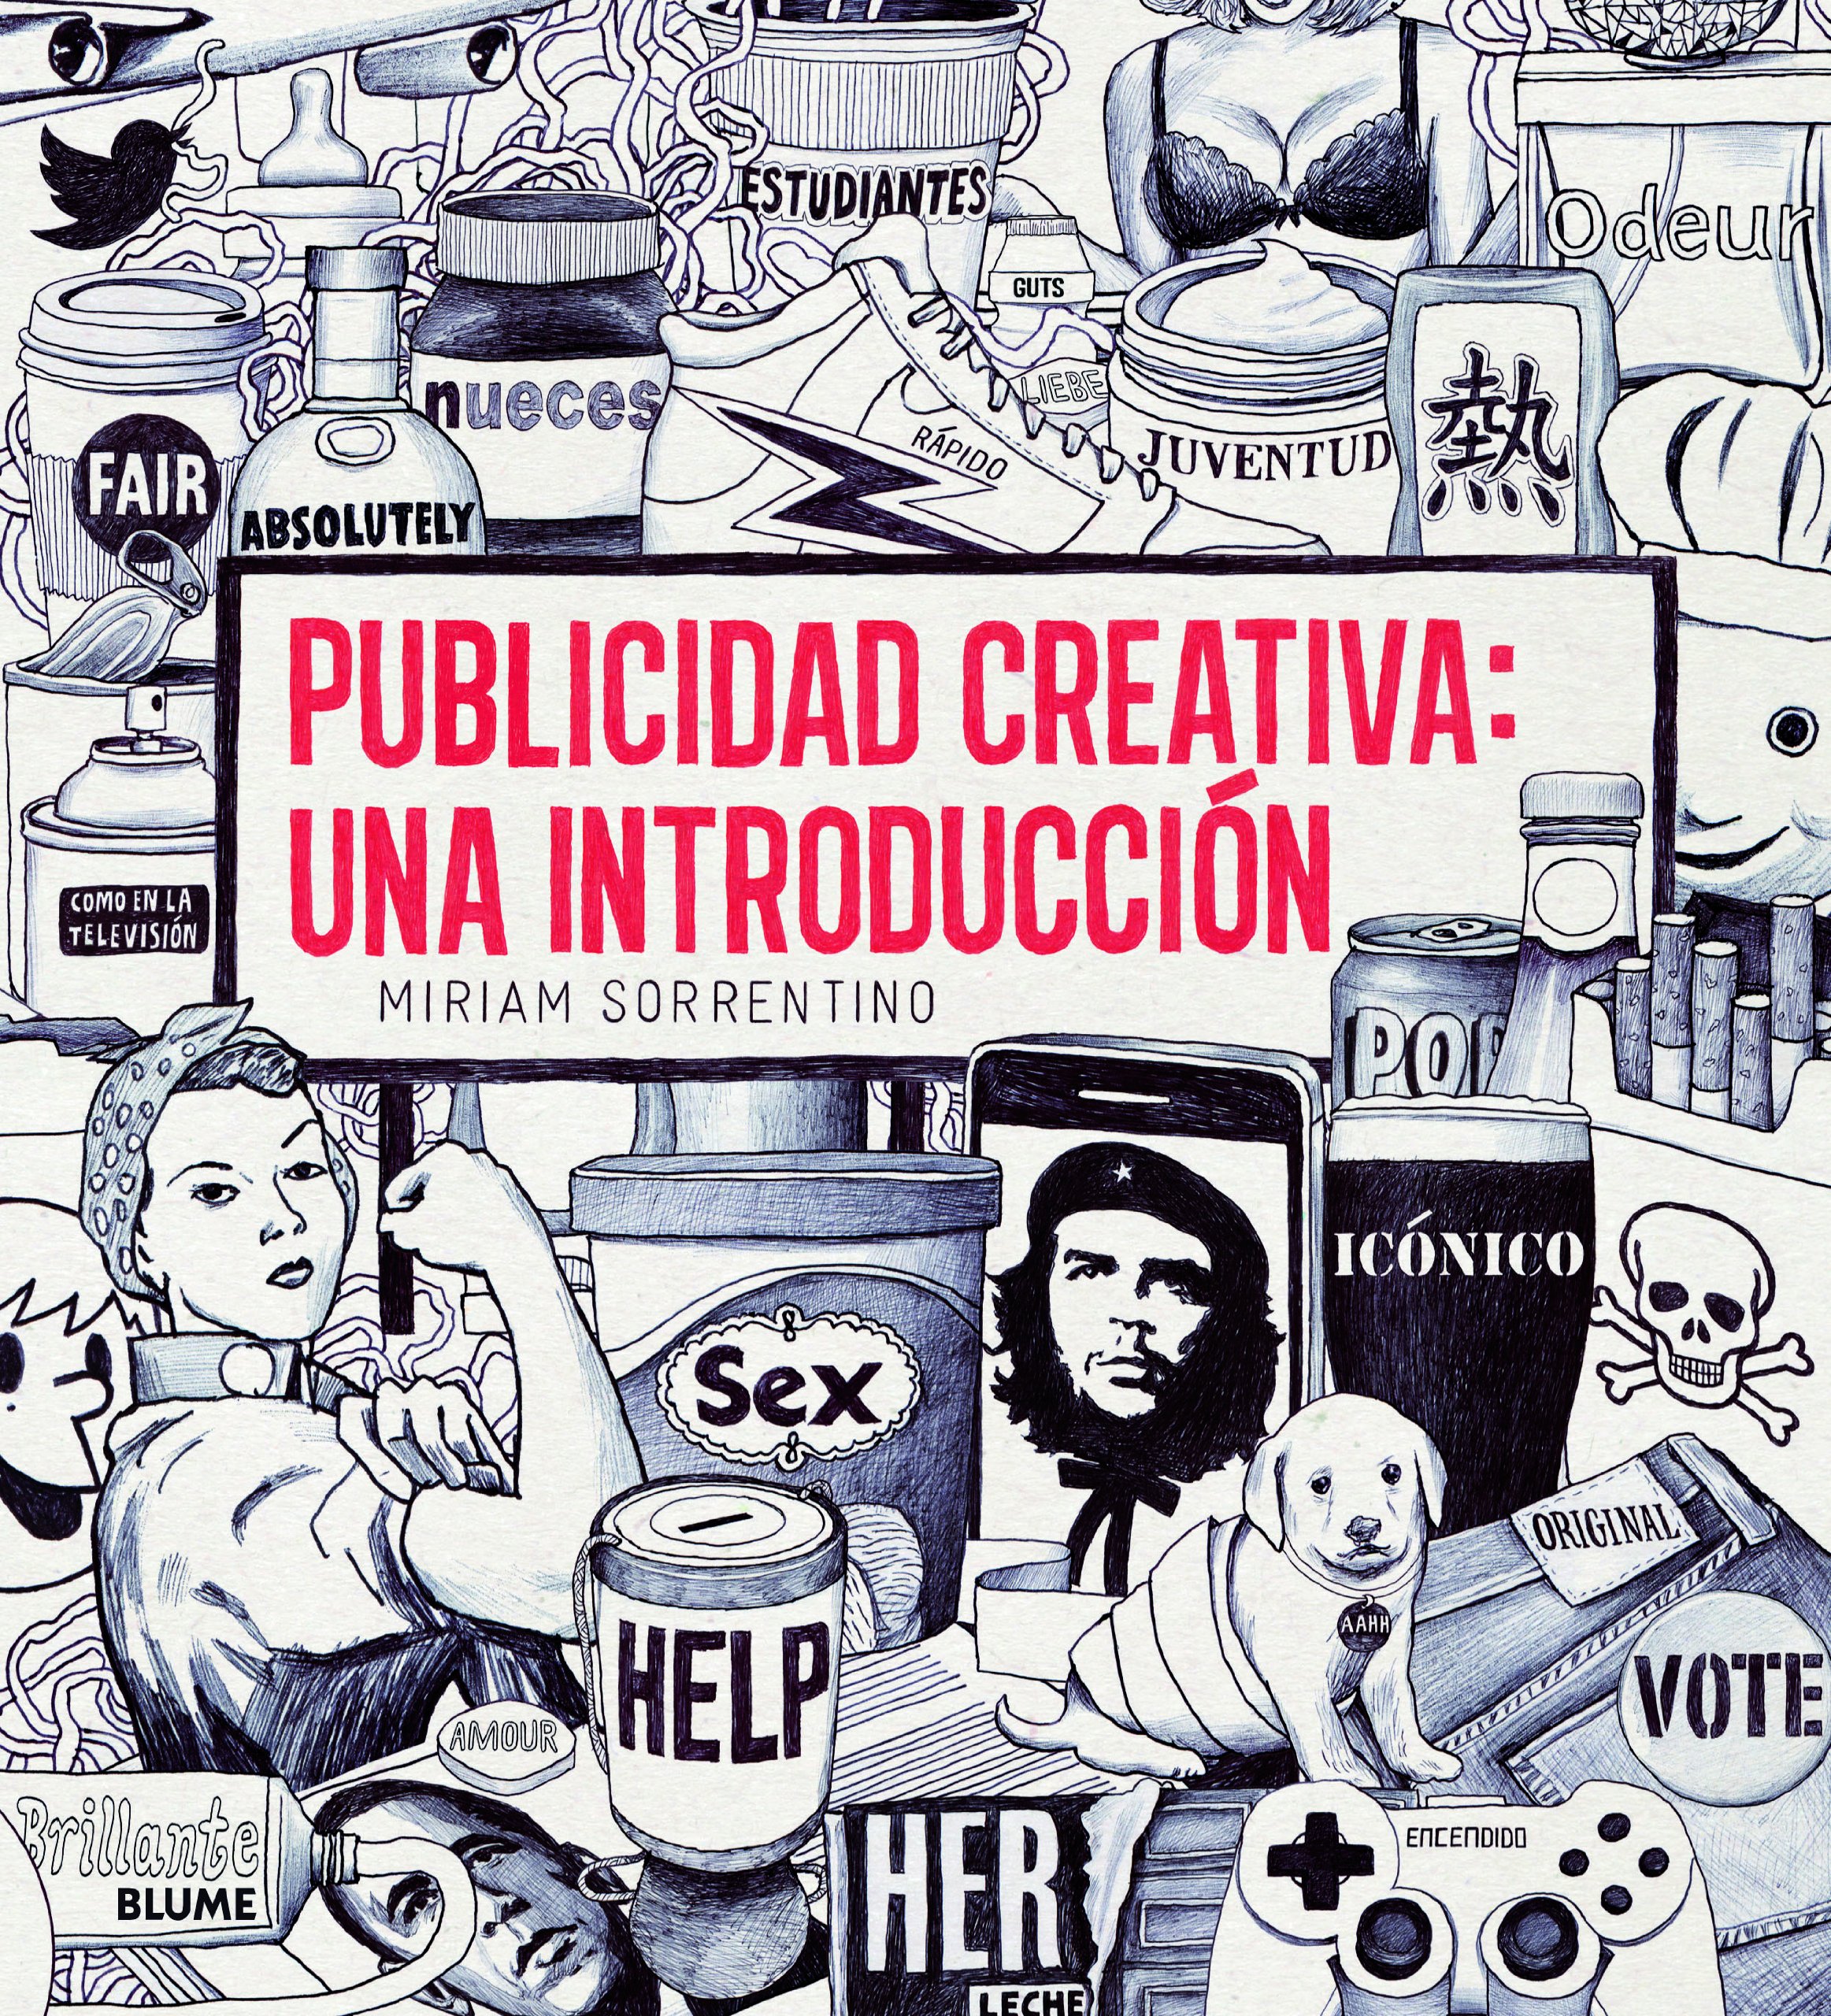 El libro Publicidad Creativa recopila los fundamentos esenciales para elaborar publicidad con un toque innovador que permita impactar en el consumidor.